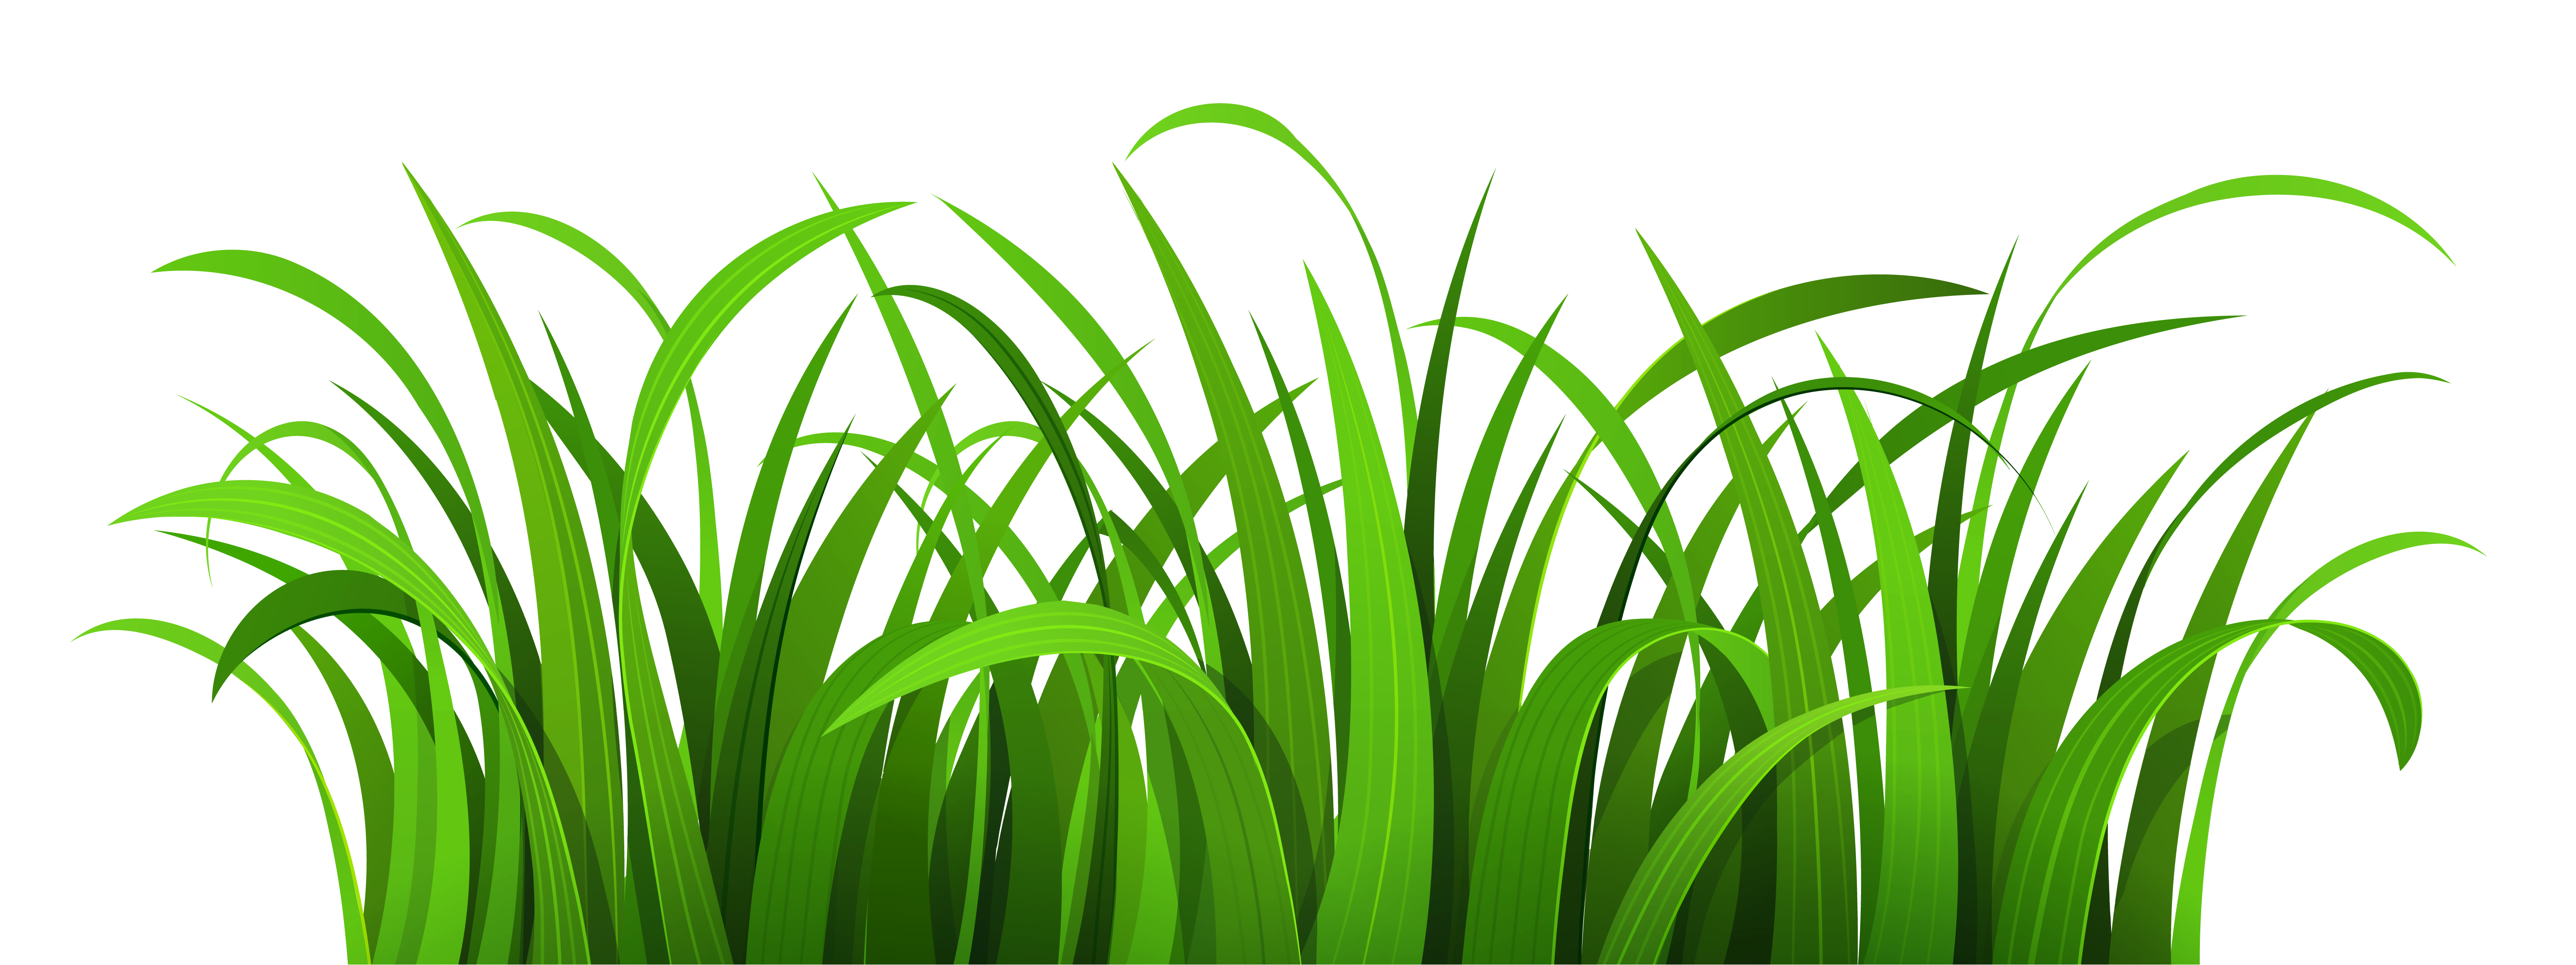 clipart sun grass